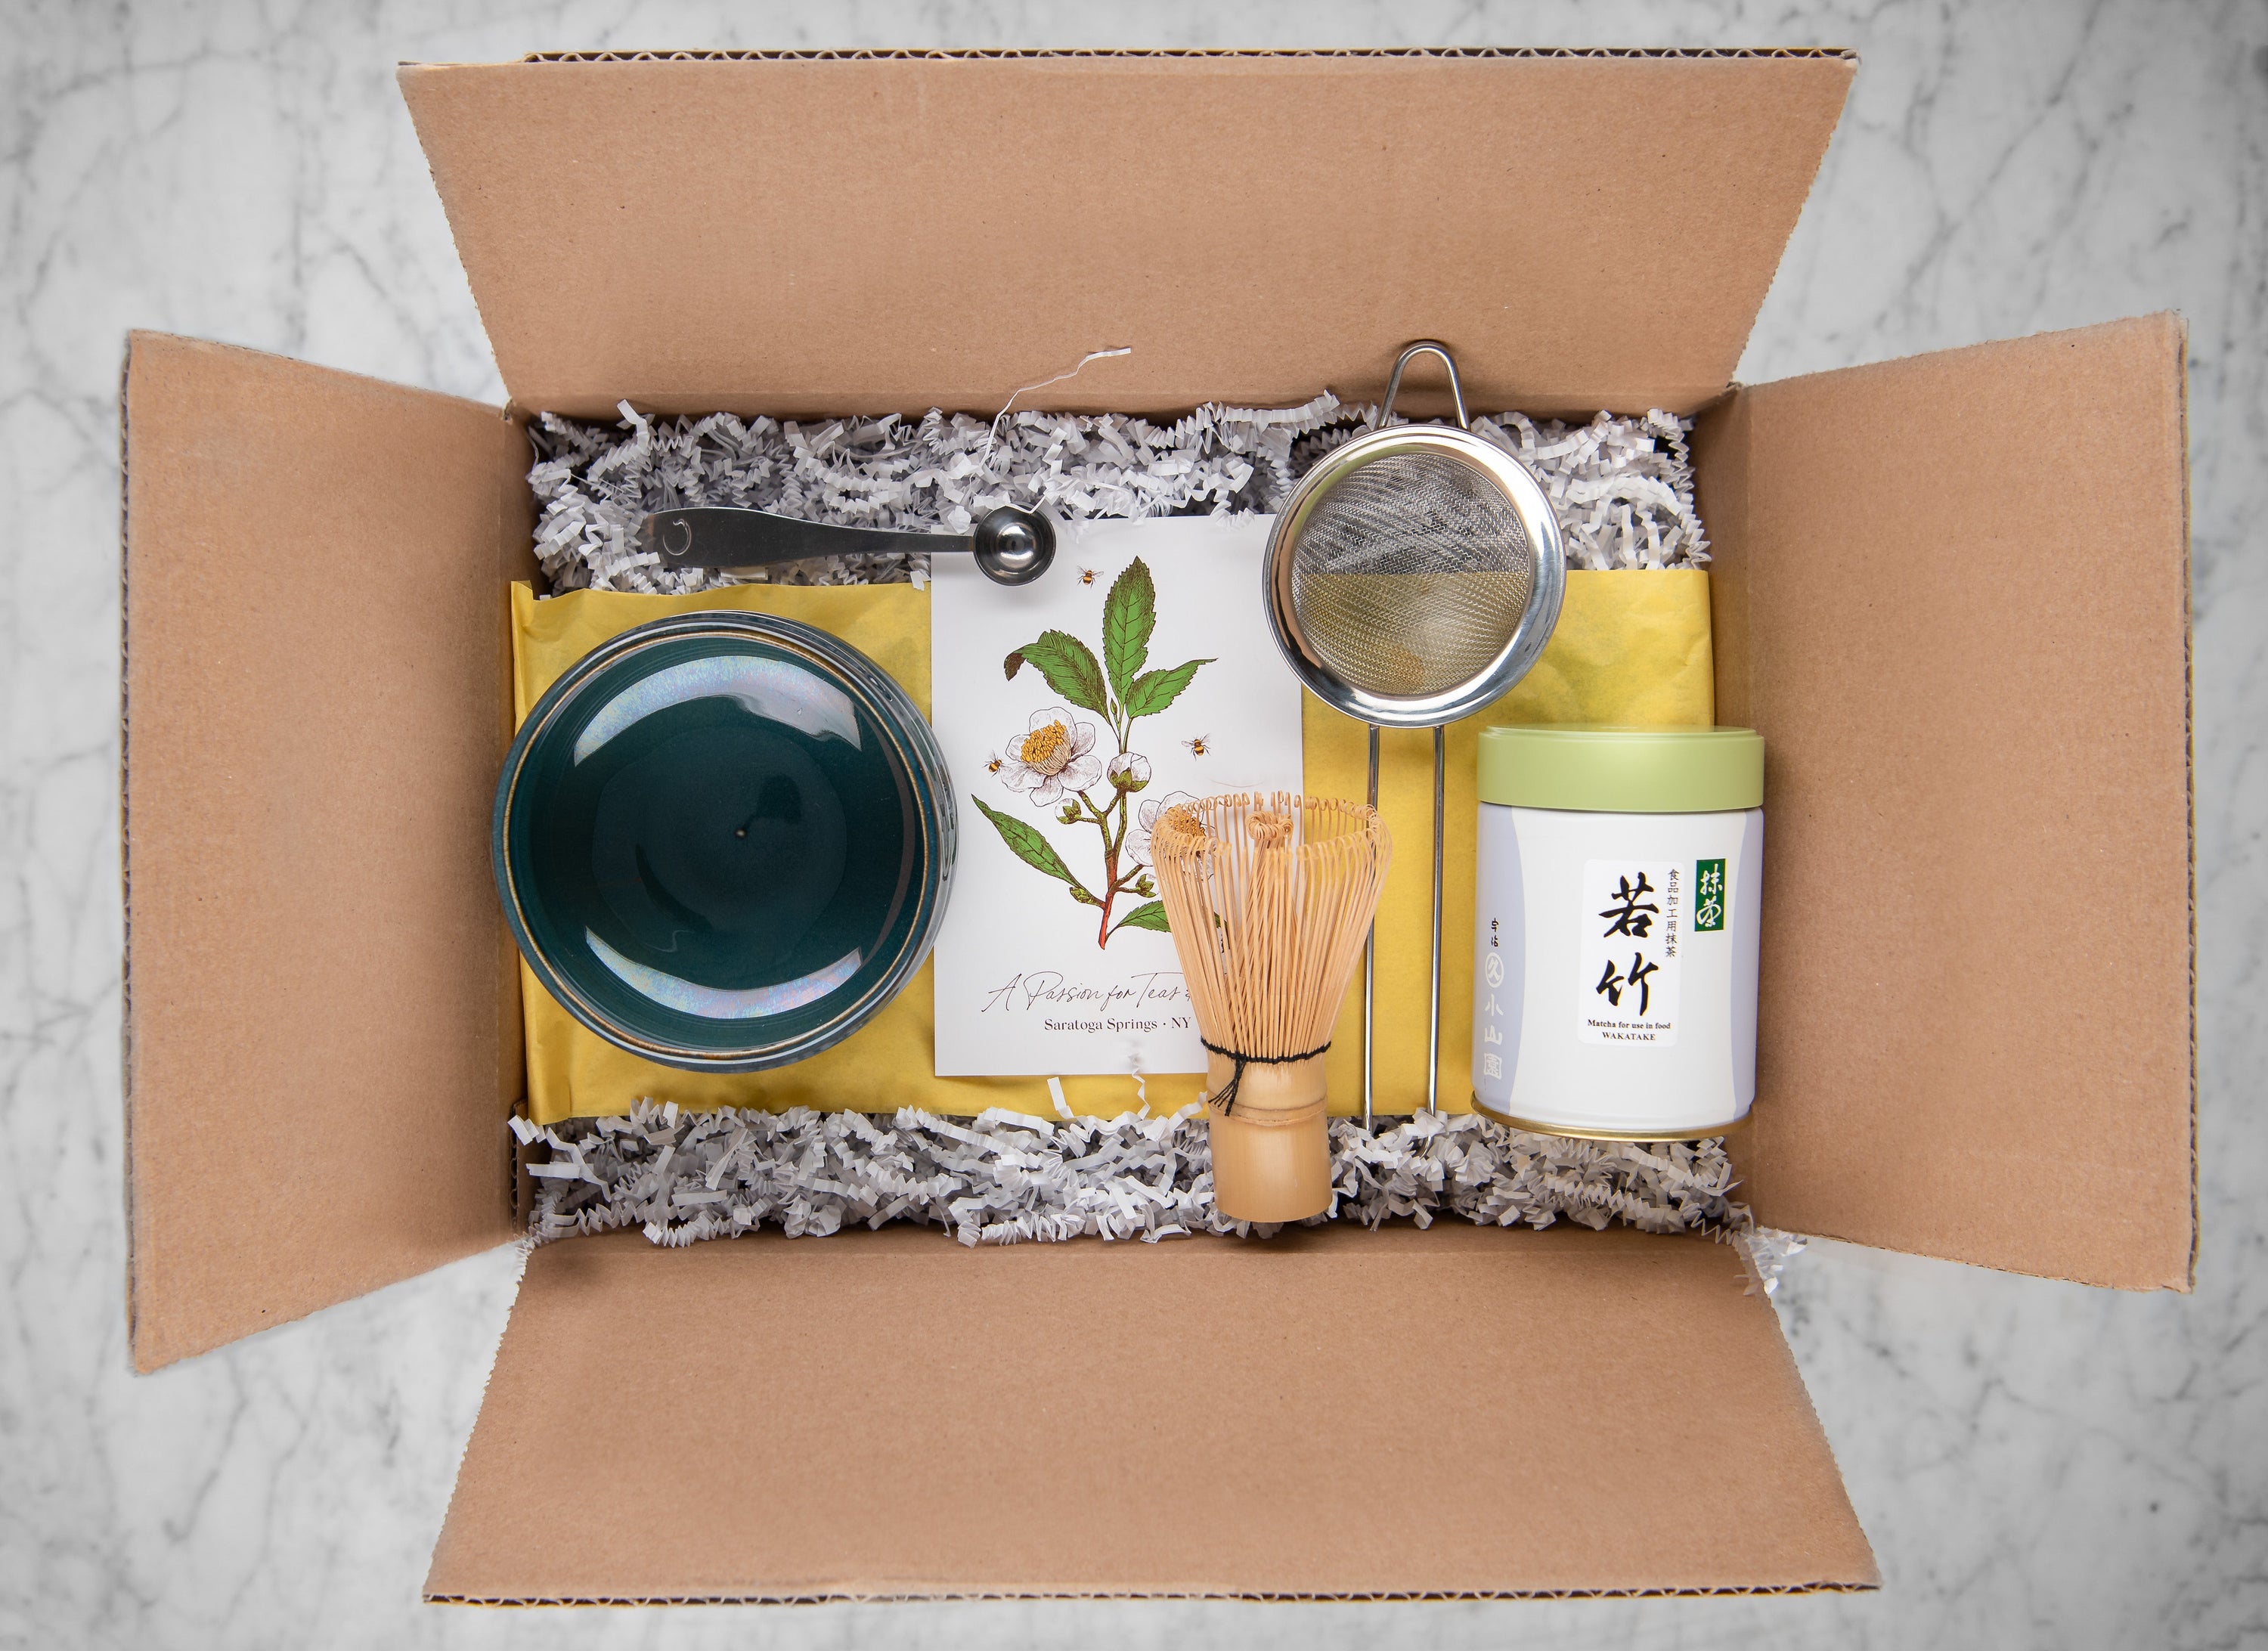 Matcha Box – Just Add Honey Tea Company